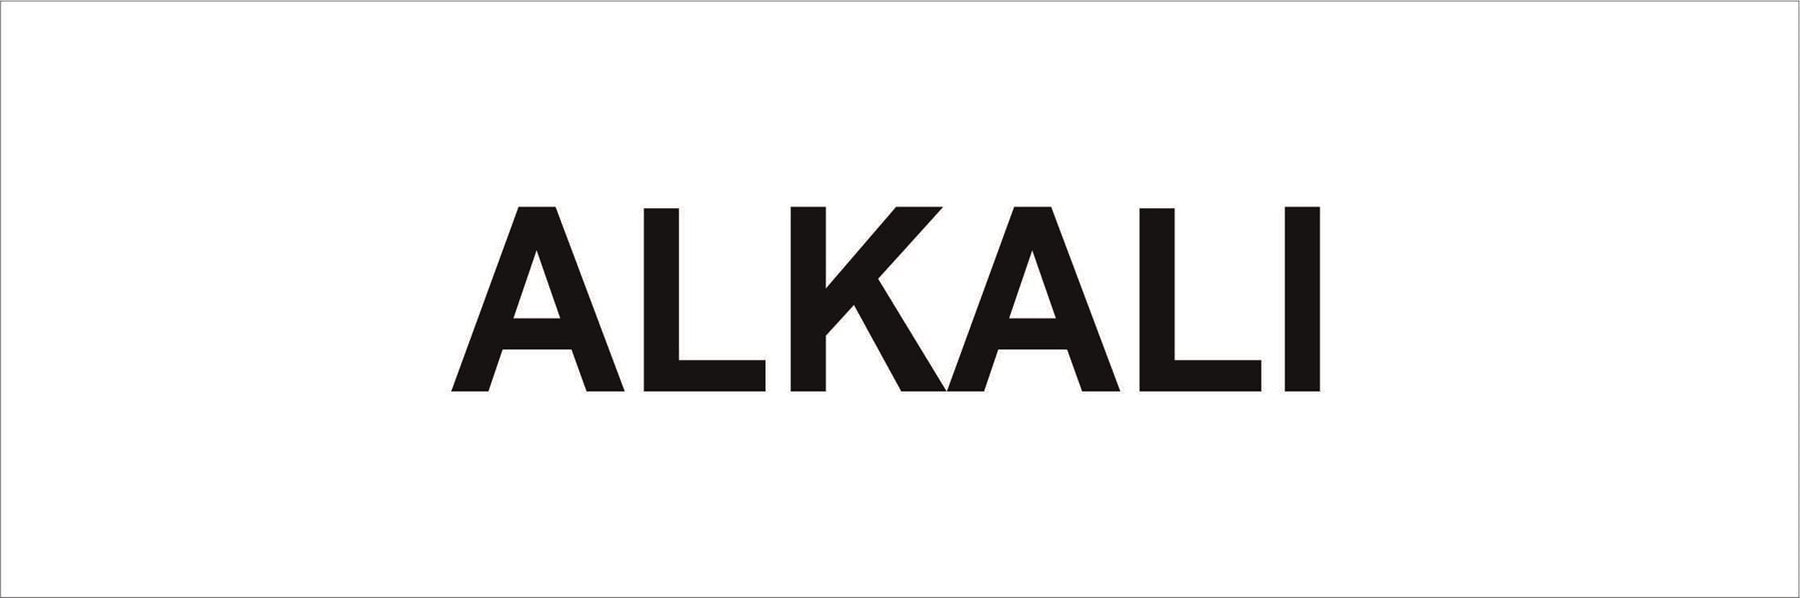 Pipeline Marking Label - ALKALI